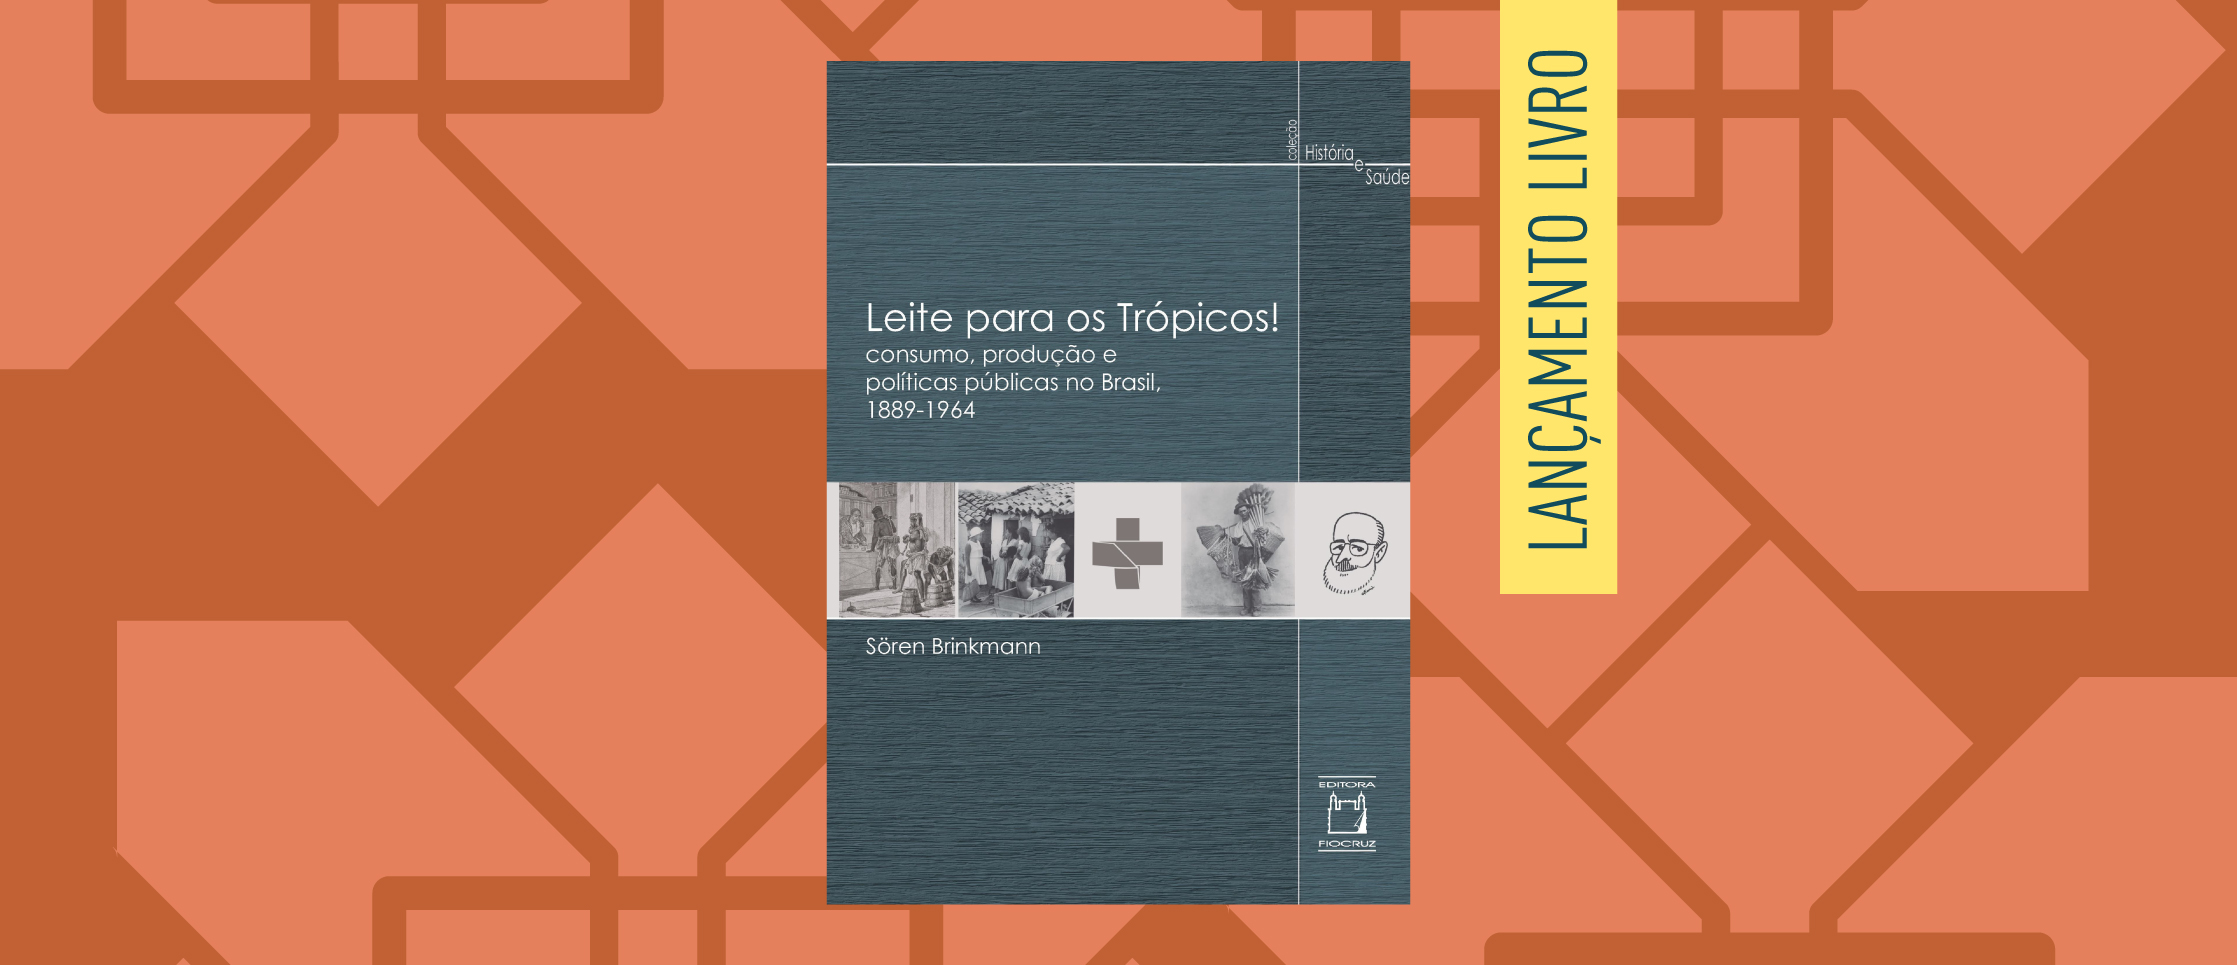 imagem de Sören Brinkmann lança livro ‘Leite para os Trópicos!’ na COC em 11/7